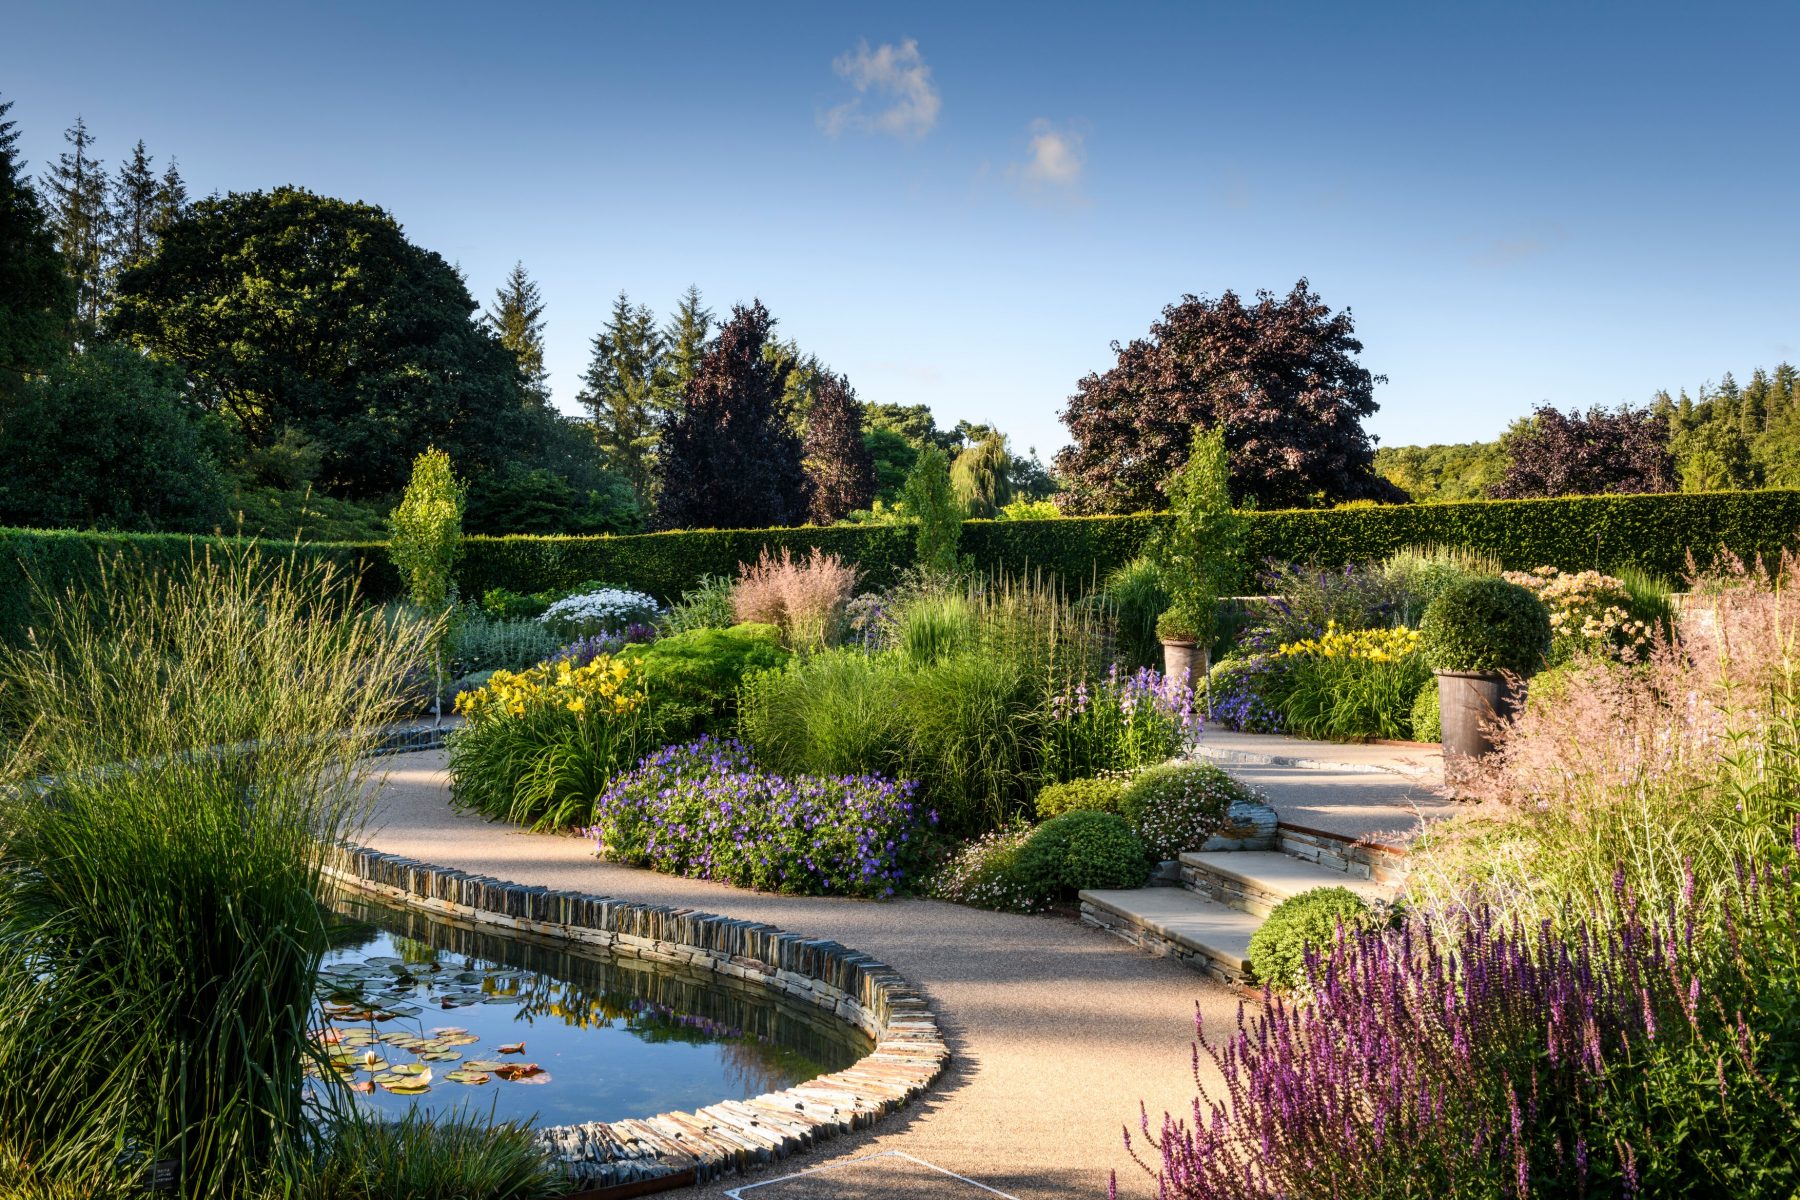 RHS Garden Rosemoor - The Cool Garden